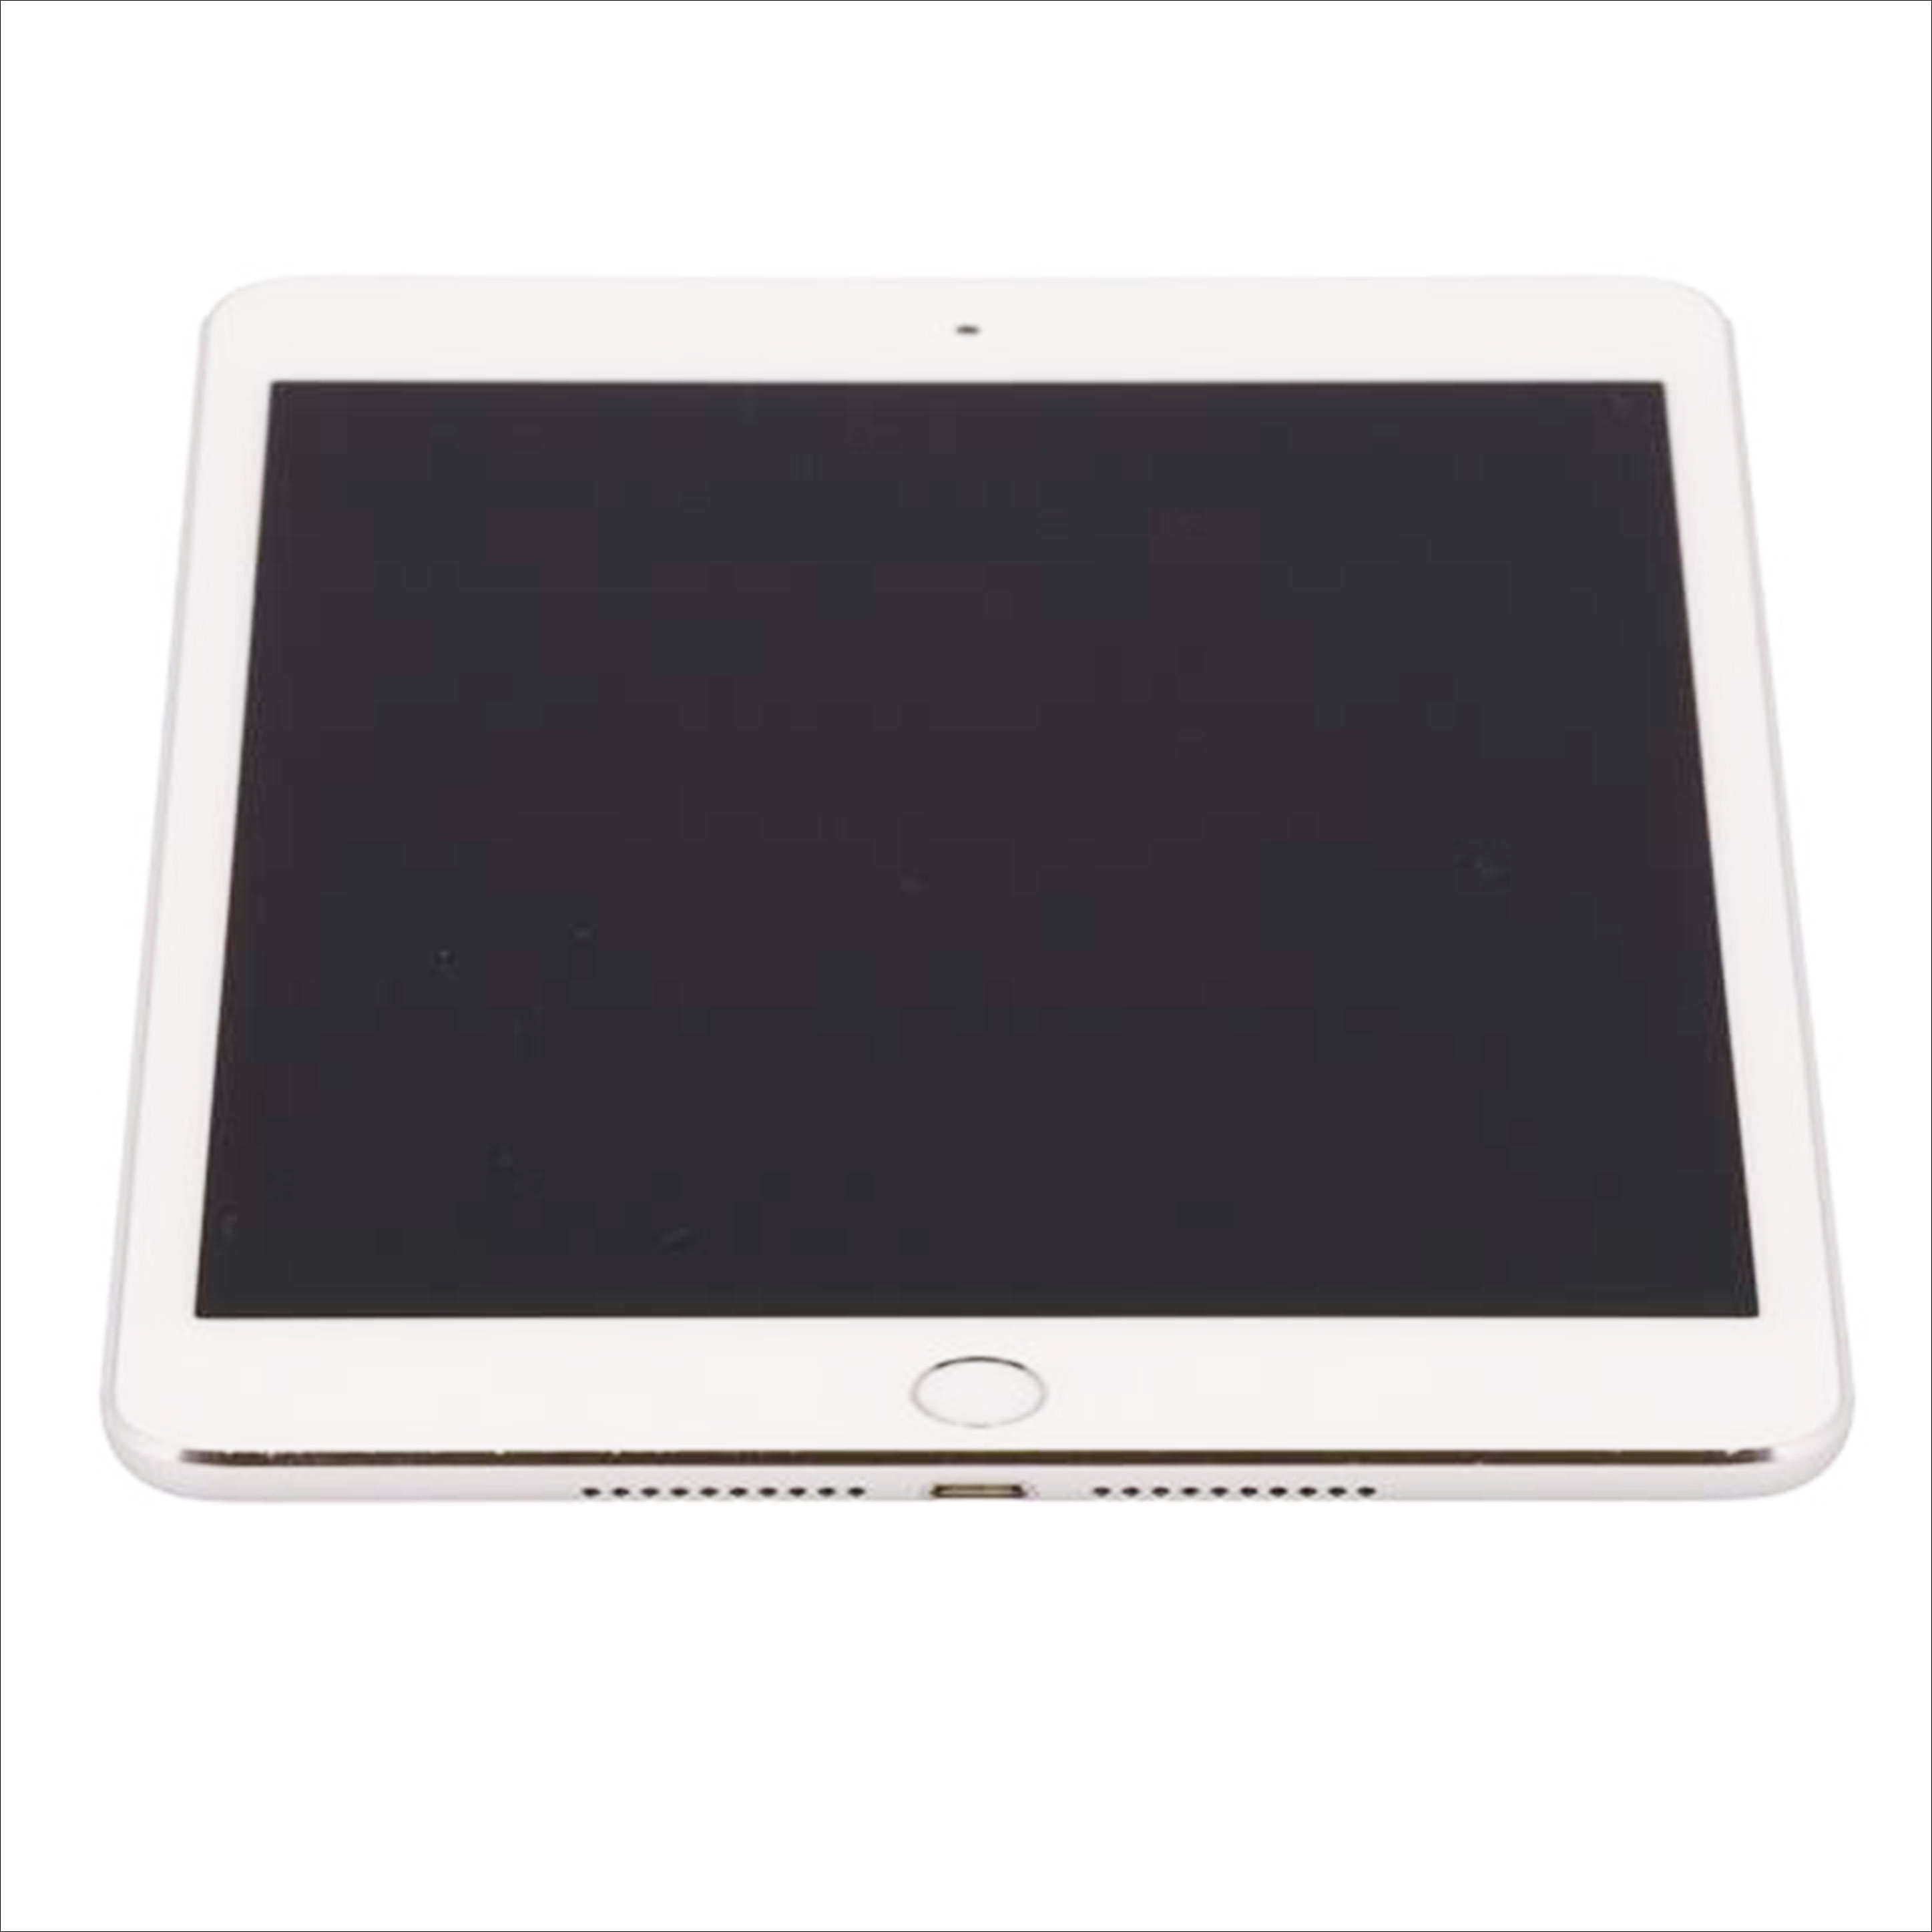 【楽天市場】Apple アップル/iPad mini 4/MK702J/A/DLXR8256GHMH/タブレット/Bランク/75【中古